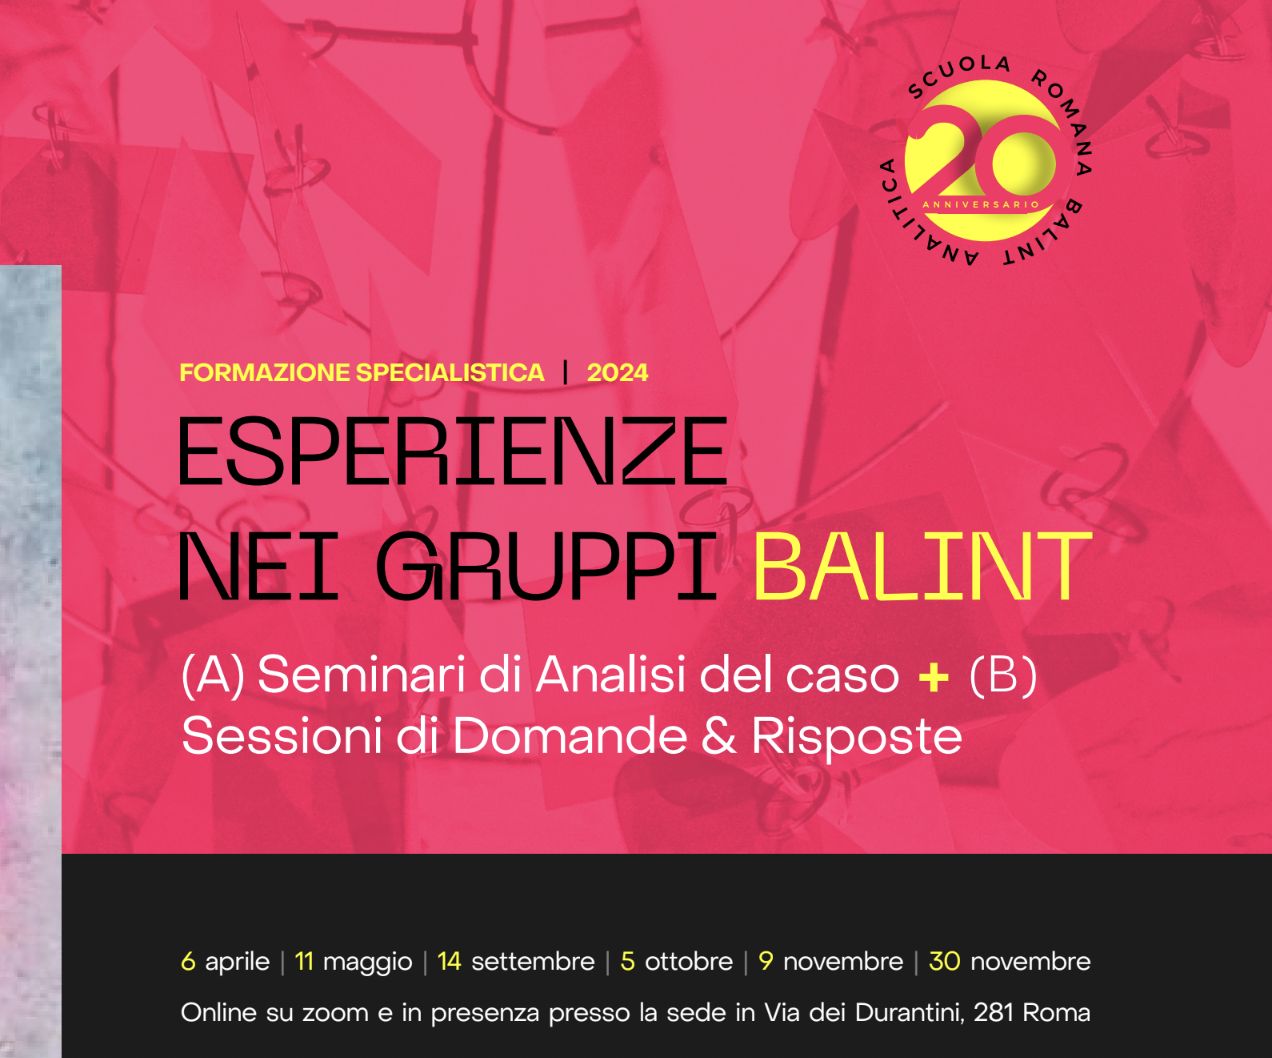 Corso biennale per conduttori di gruppi Balint – 7° edizione – Scuola Romana Balint Analitica